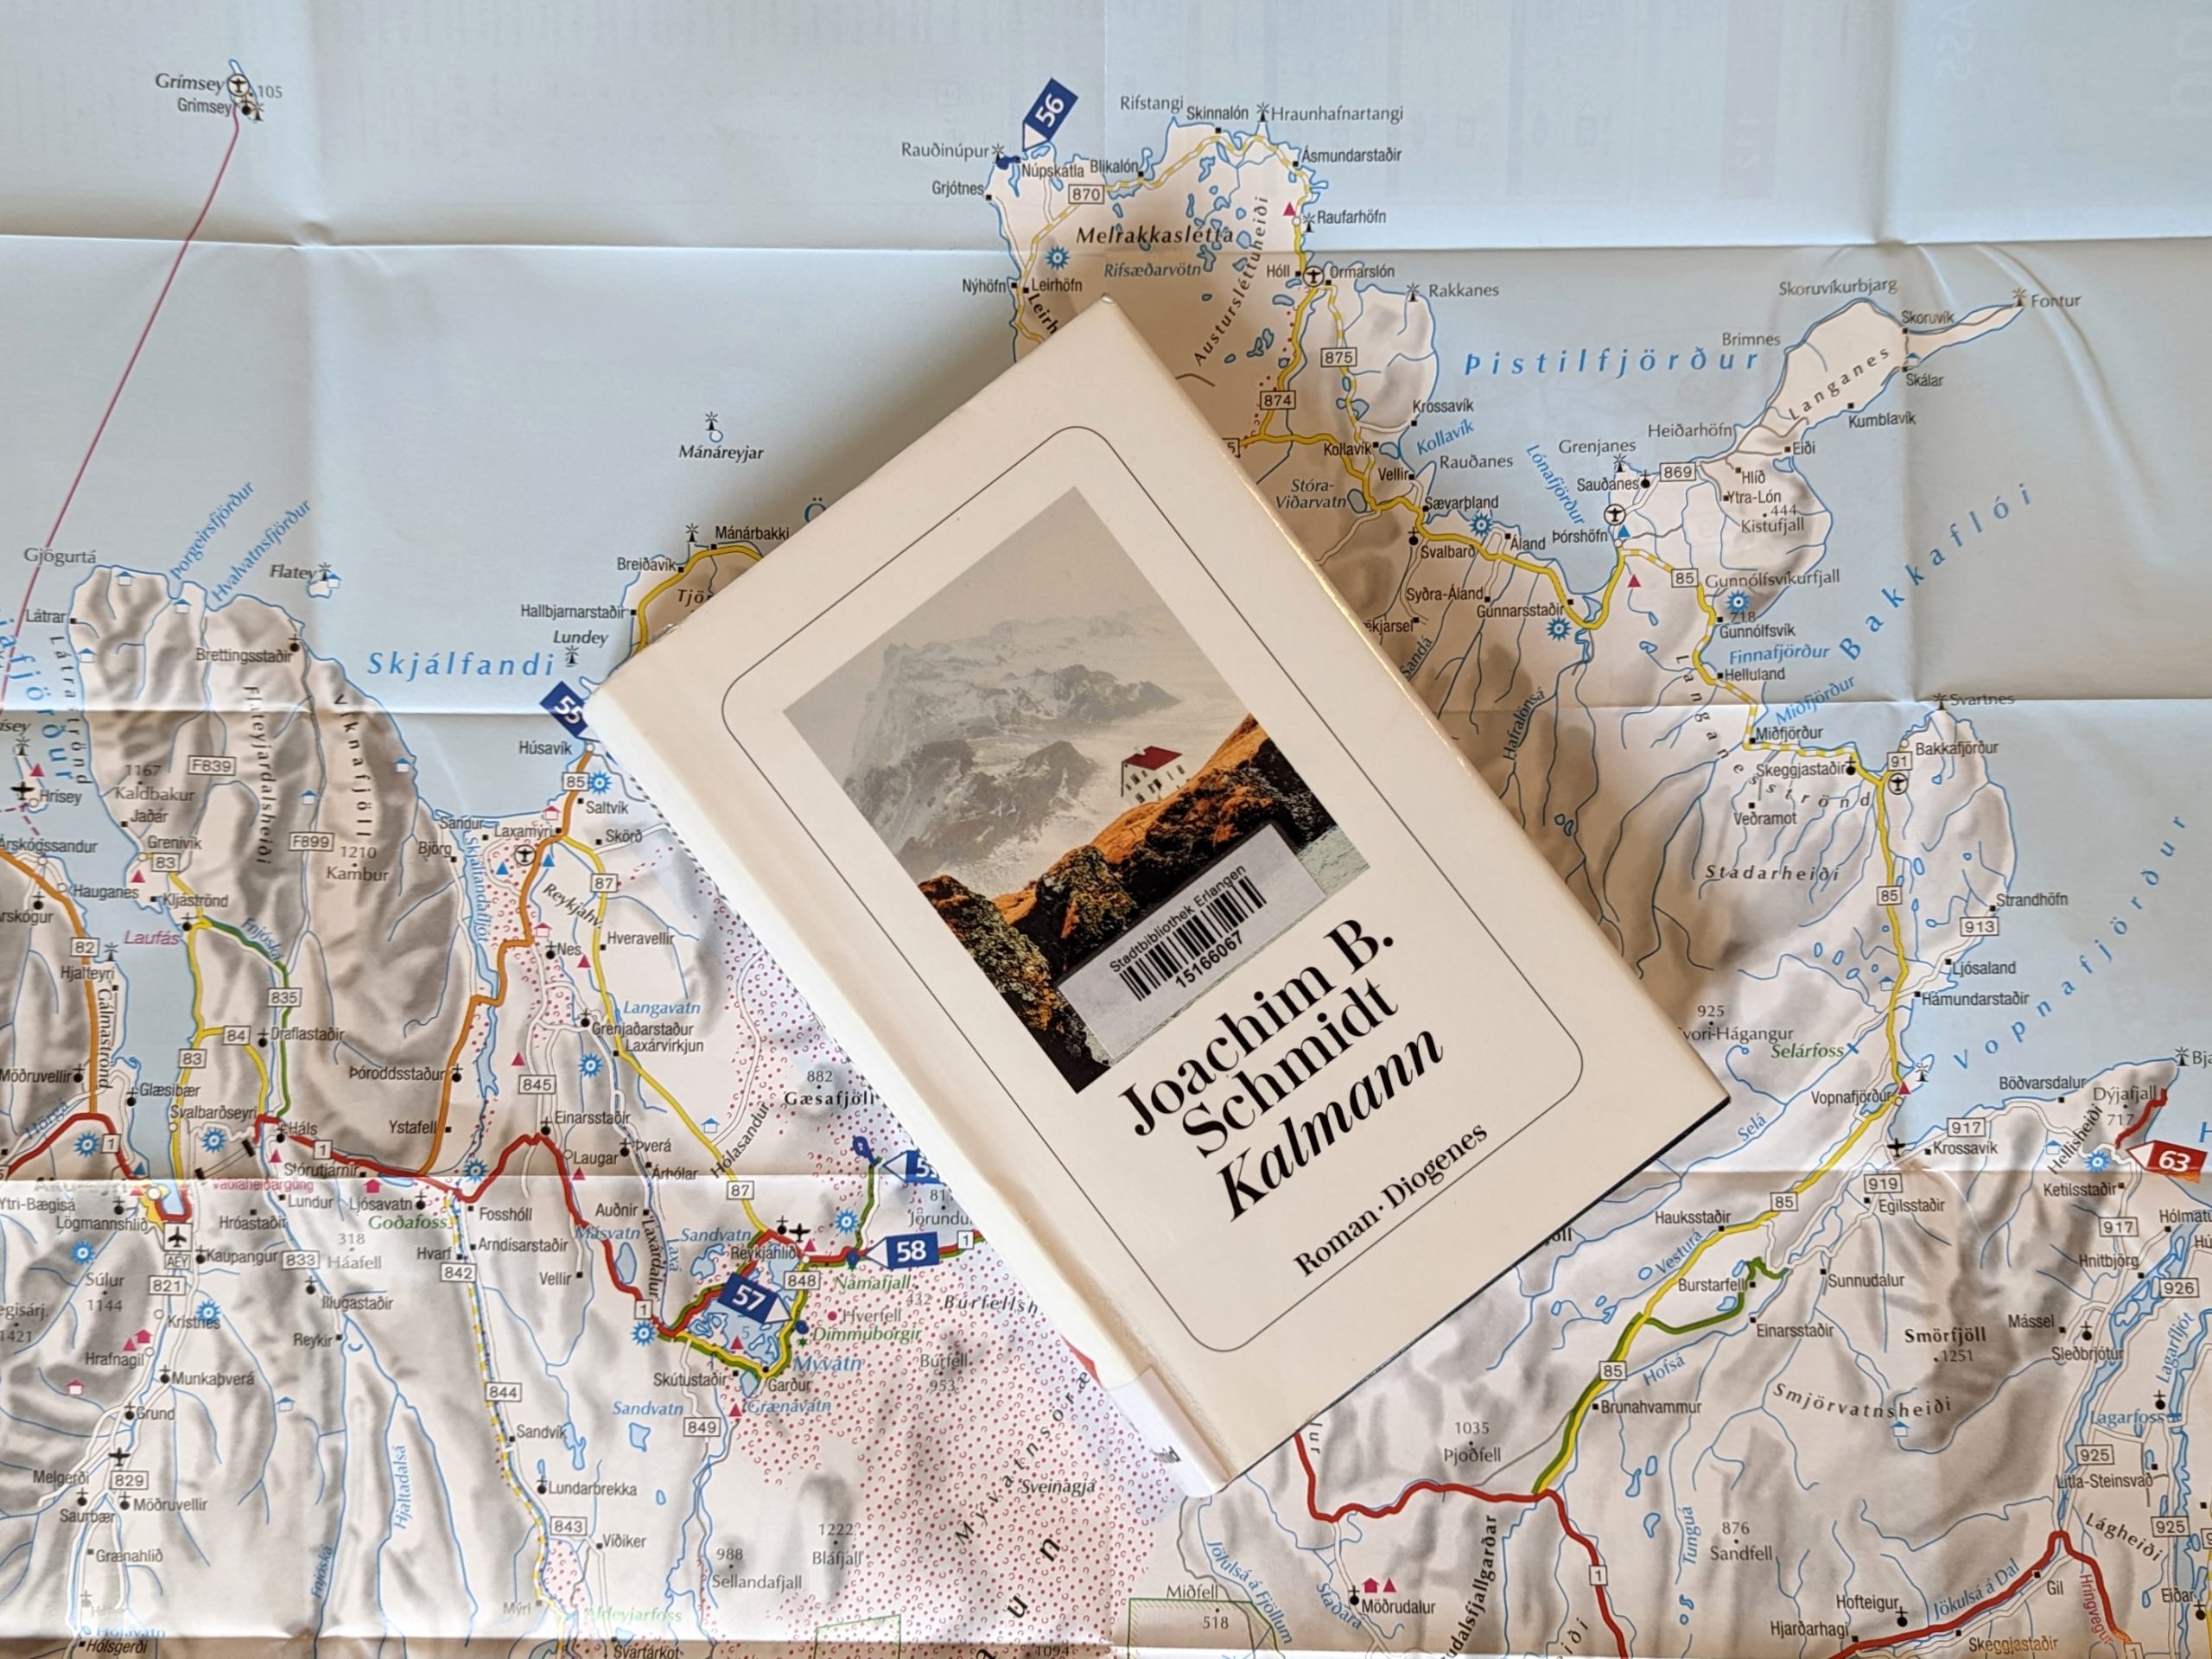 Das Buch "Kalmann" von Joachim B. Schmidt liegt auf einer Landkarte des nördlichen Islands.